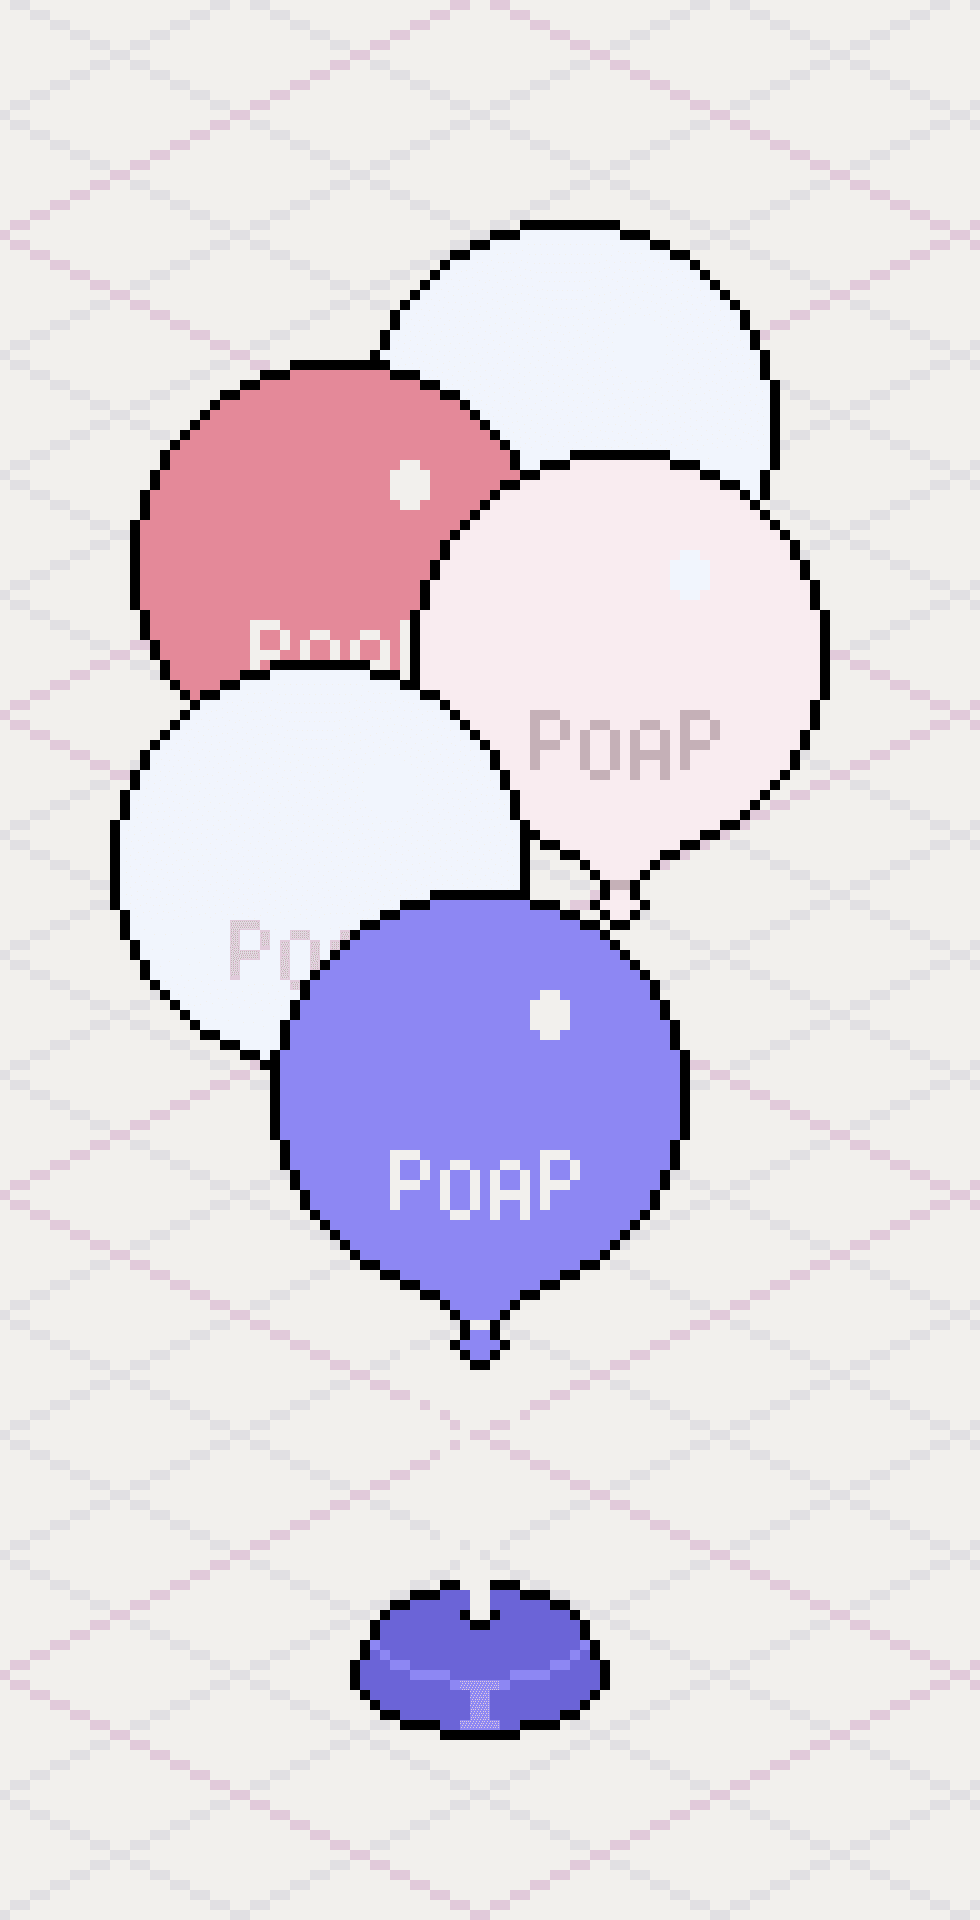 POAP Balloon